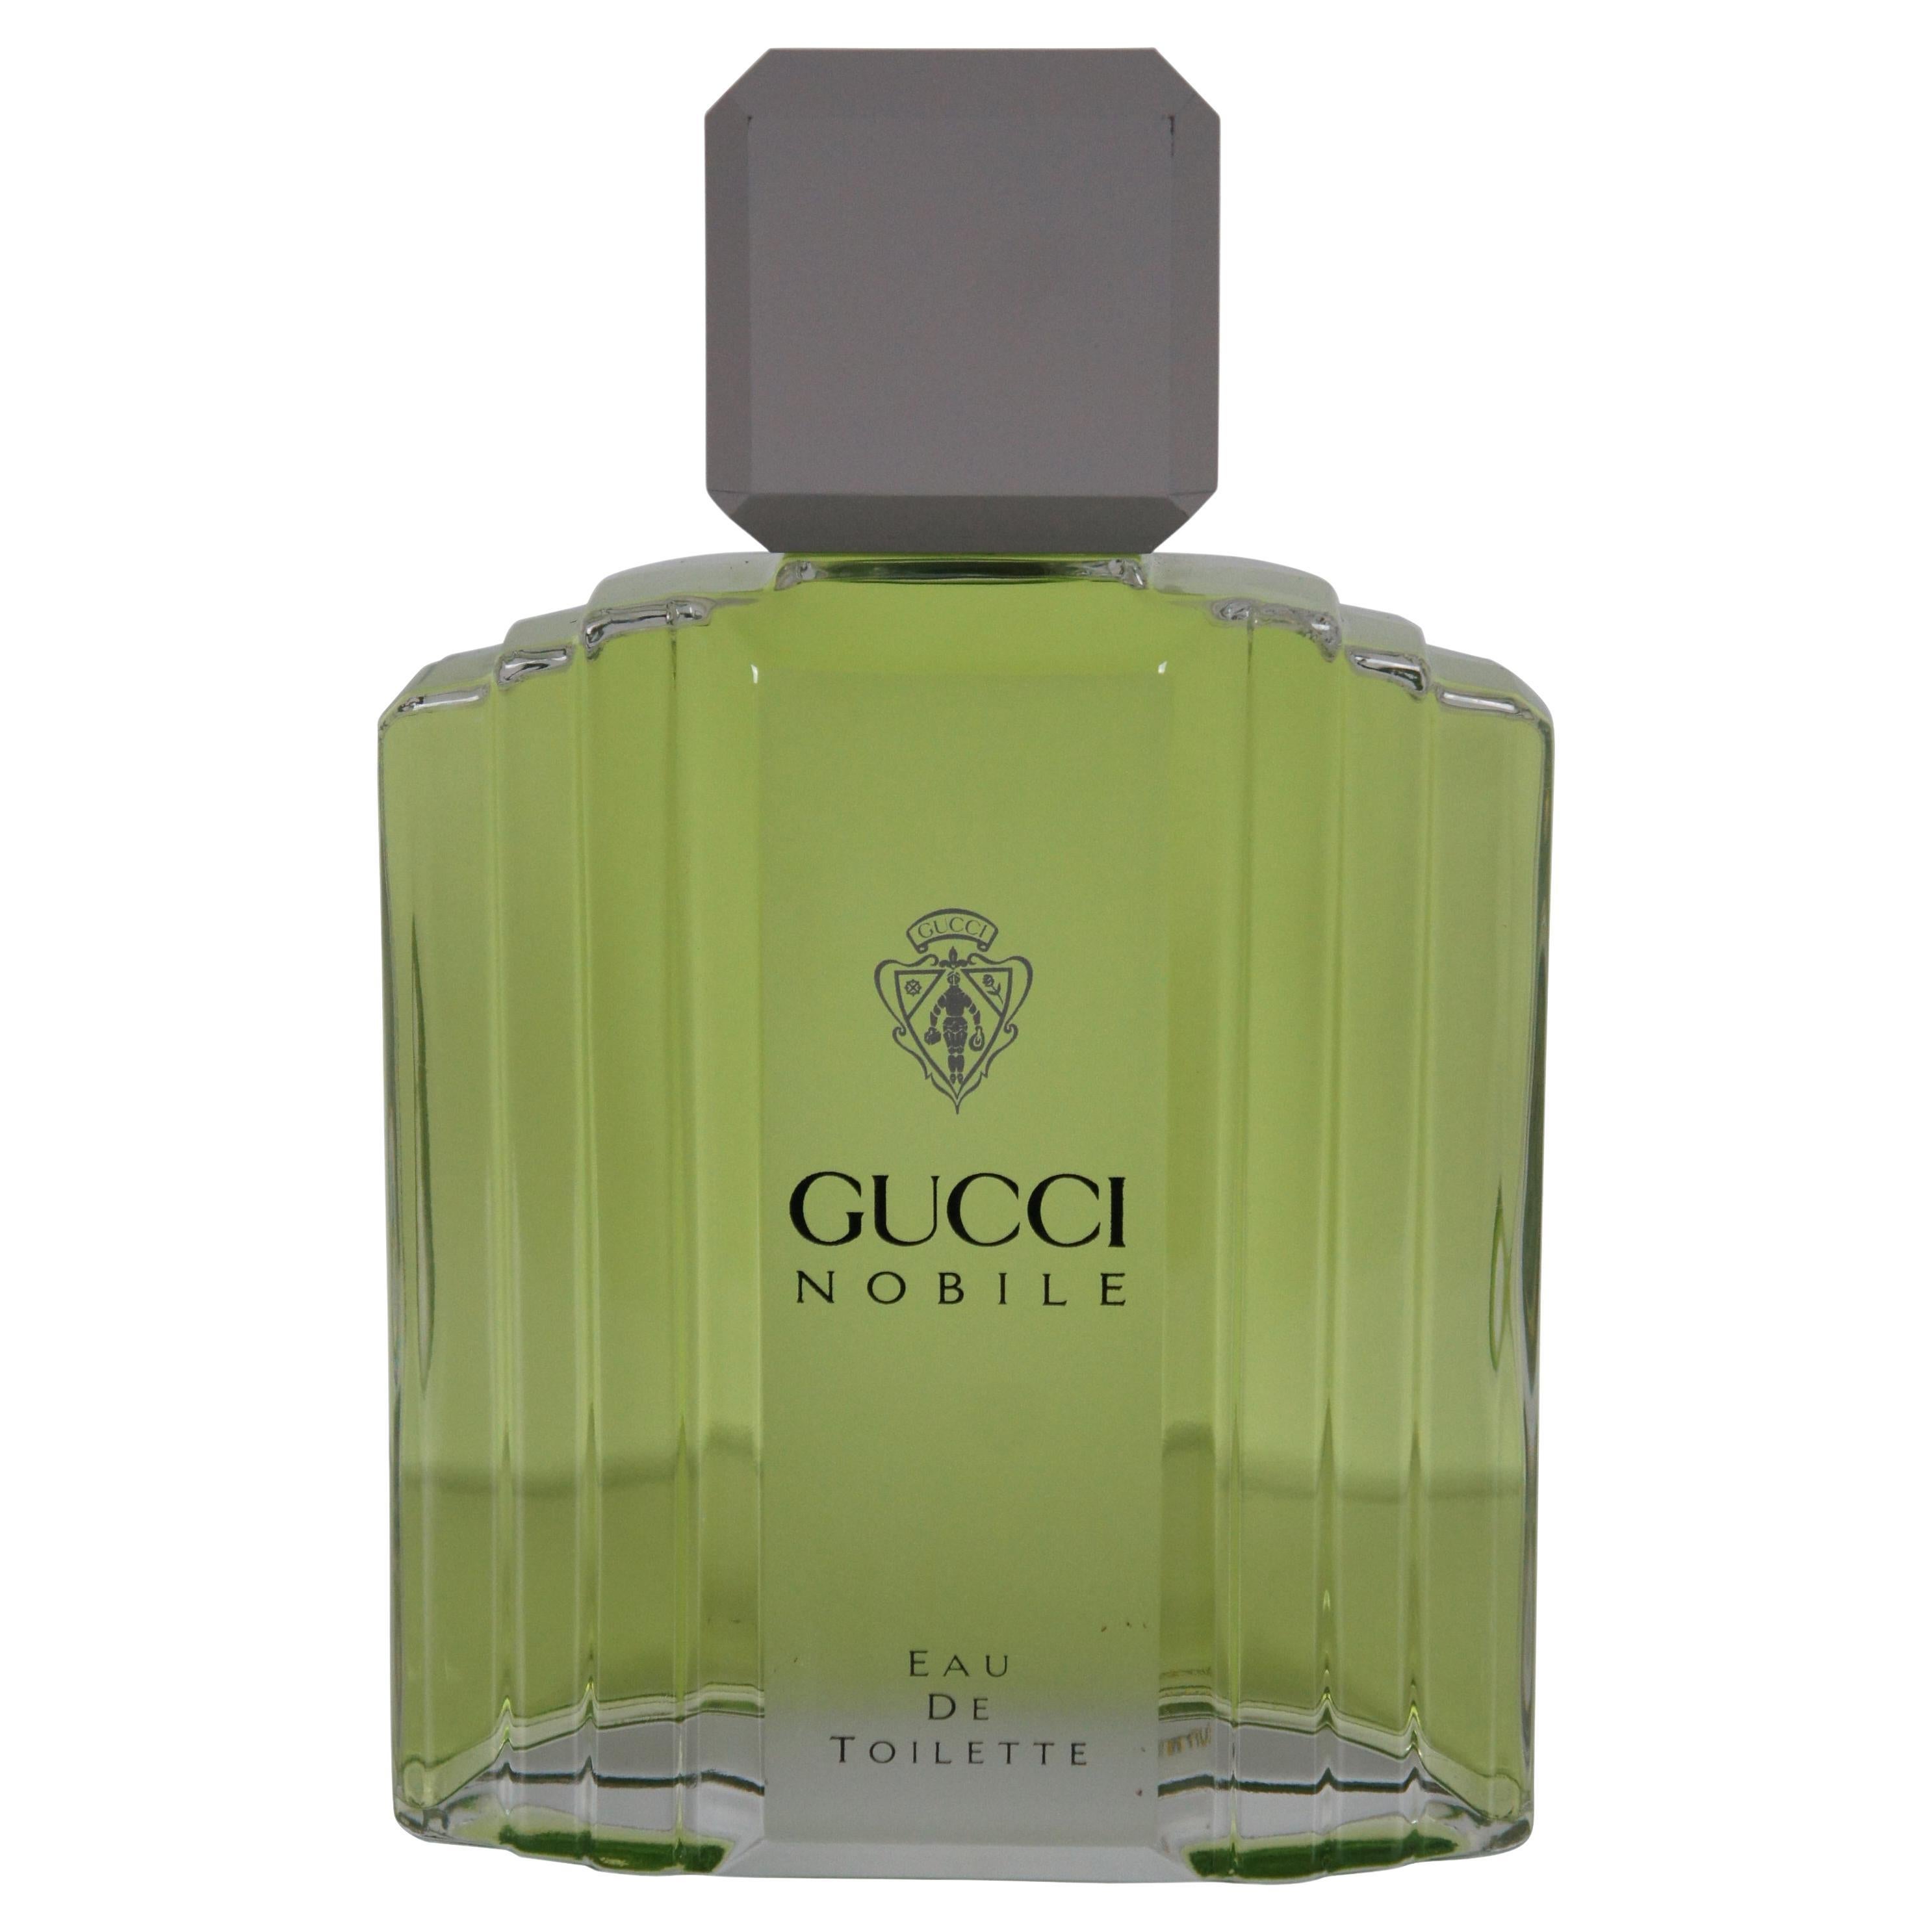 Gucci Nobile Eau Toilette Factice Dummy Cologne Perfume Bottle Store Display